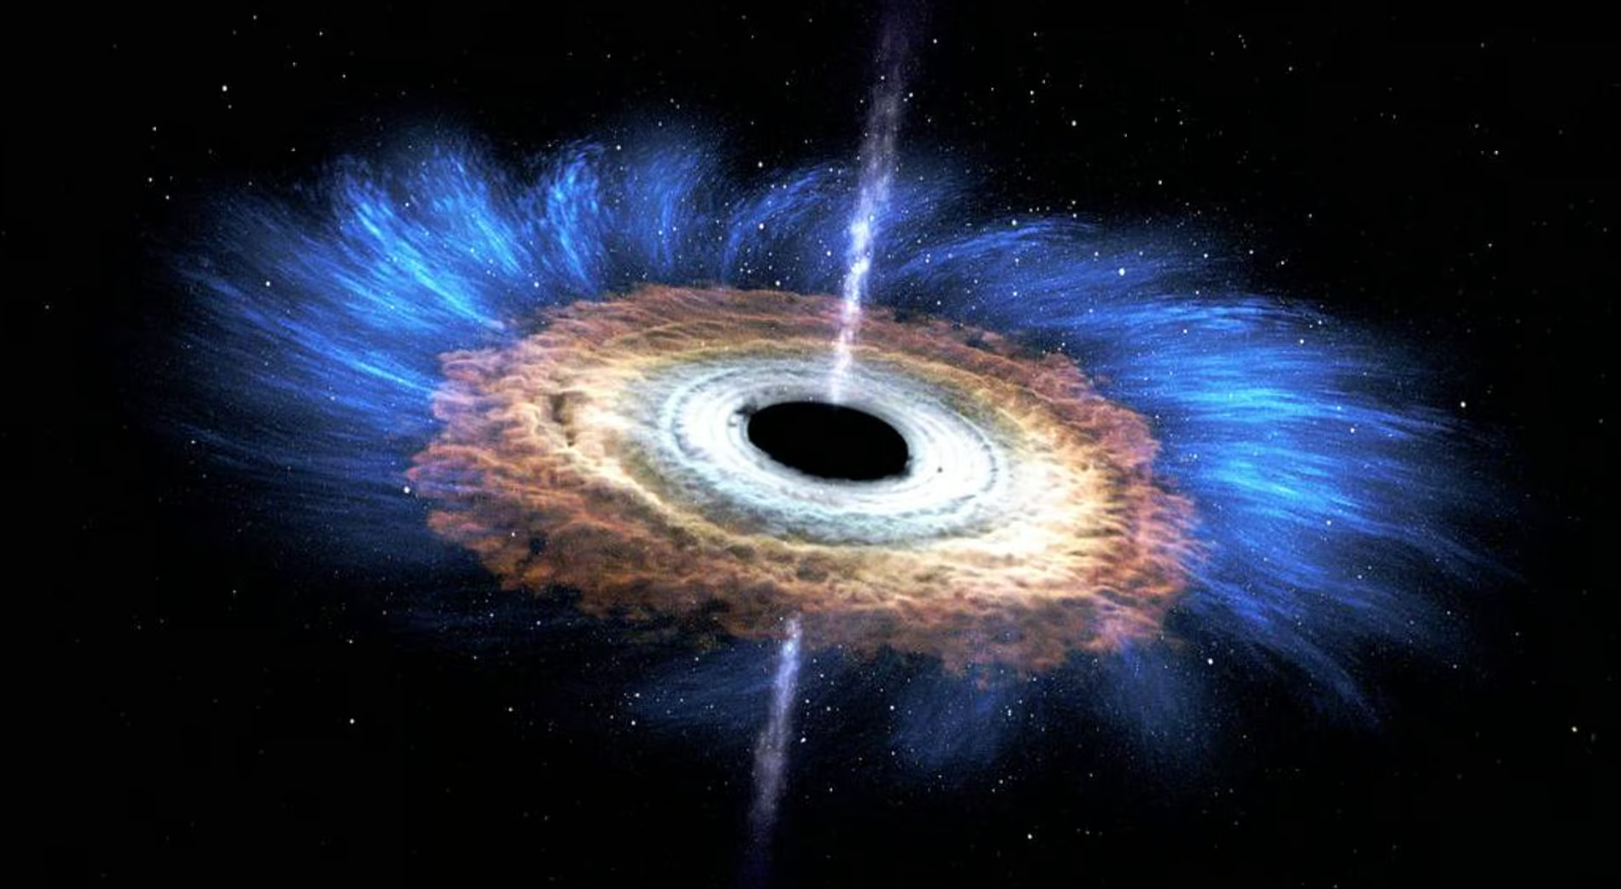 Un agujero negro supermasivo desgarra una estrella a 137 millones de años luz: el suceso más cercano en la historia de la observación.